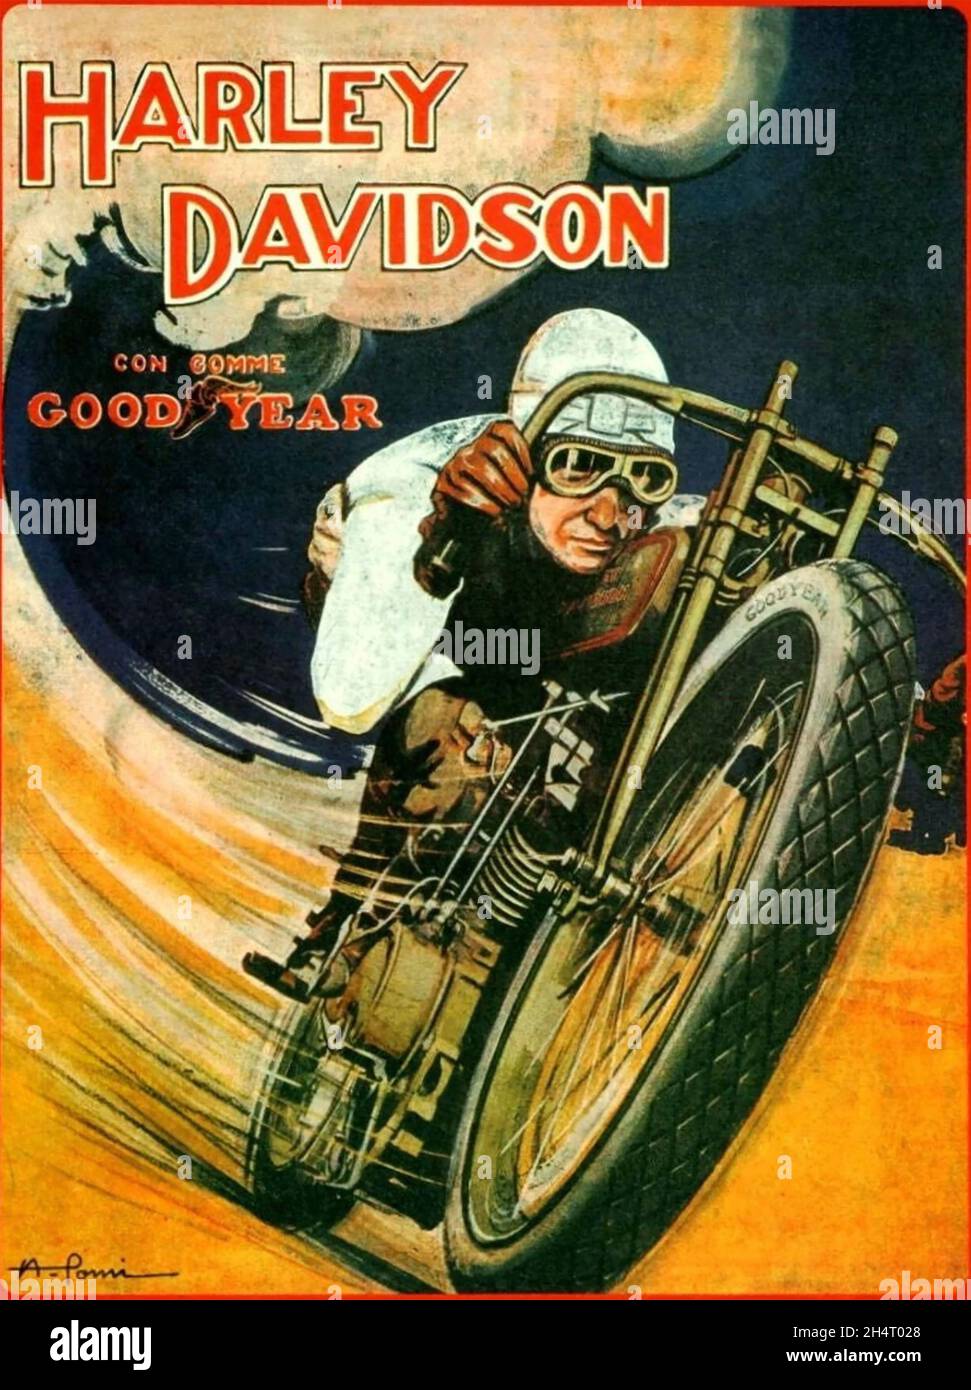 HARLEY-DAVIDSON produttore americano di moto.Poster circa 1927 Foto Stock